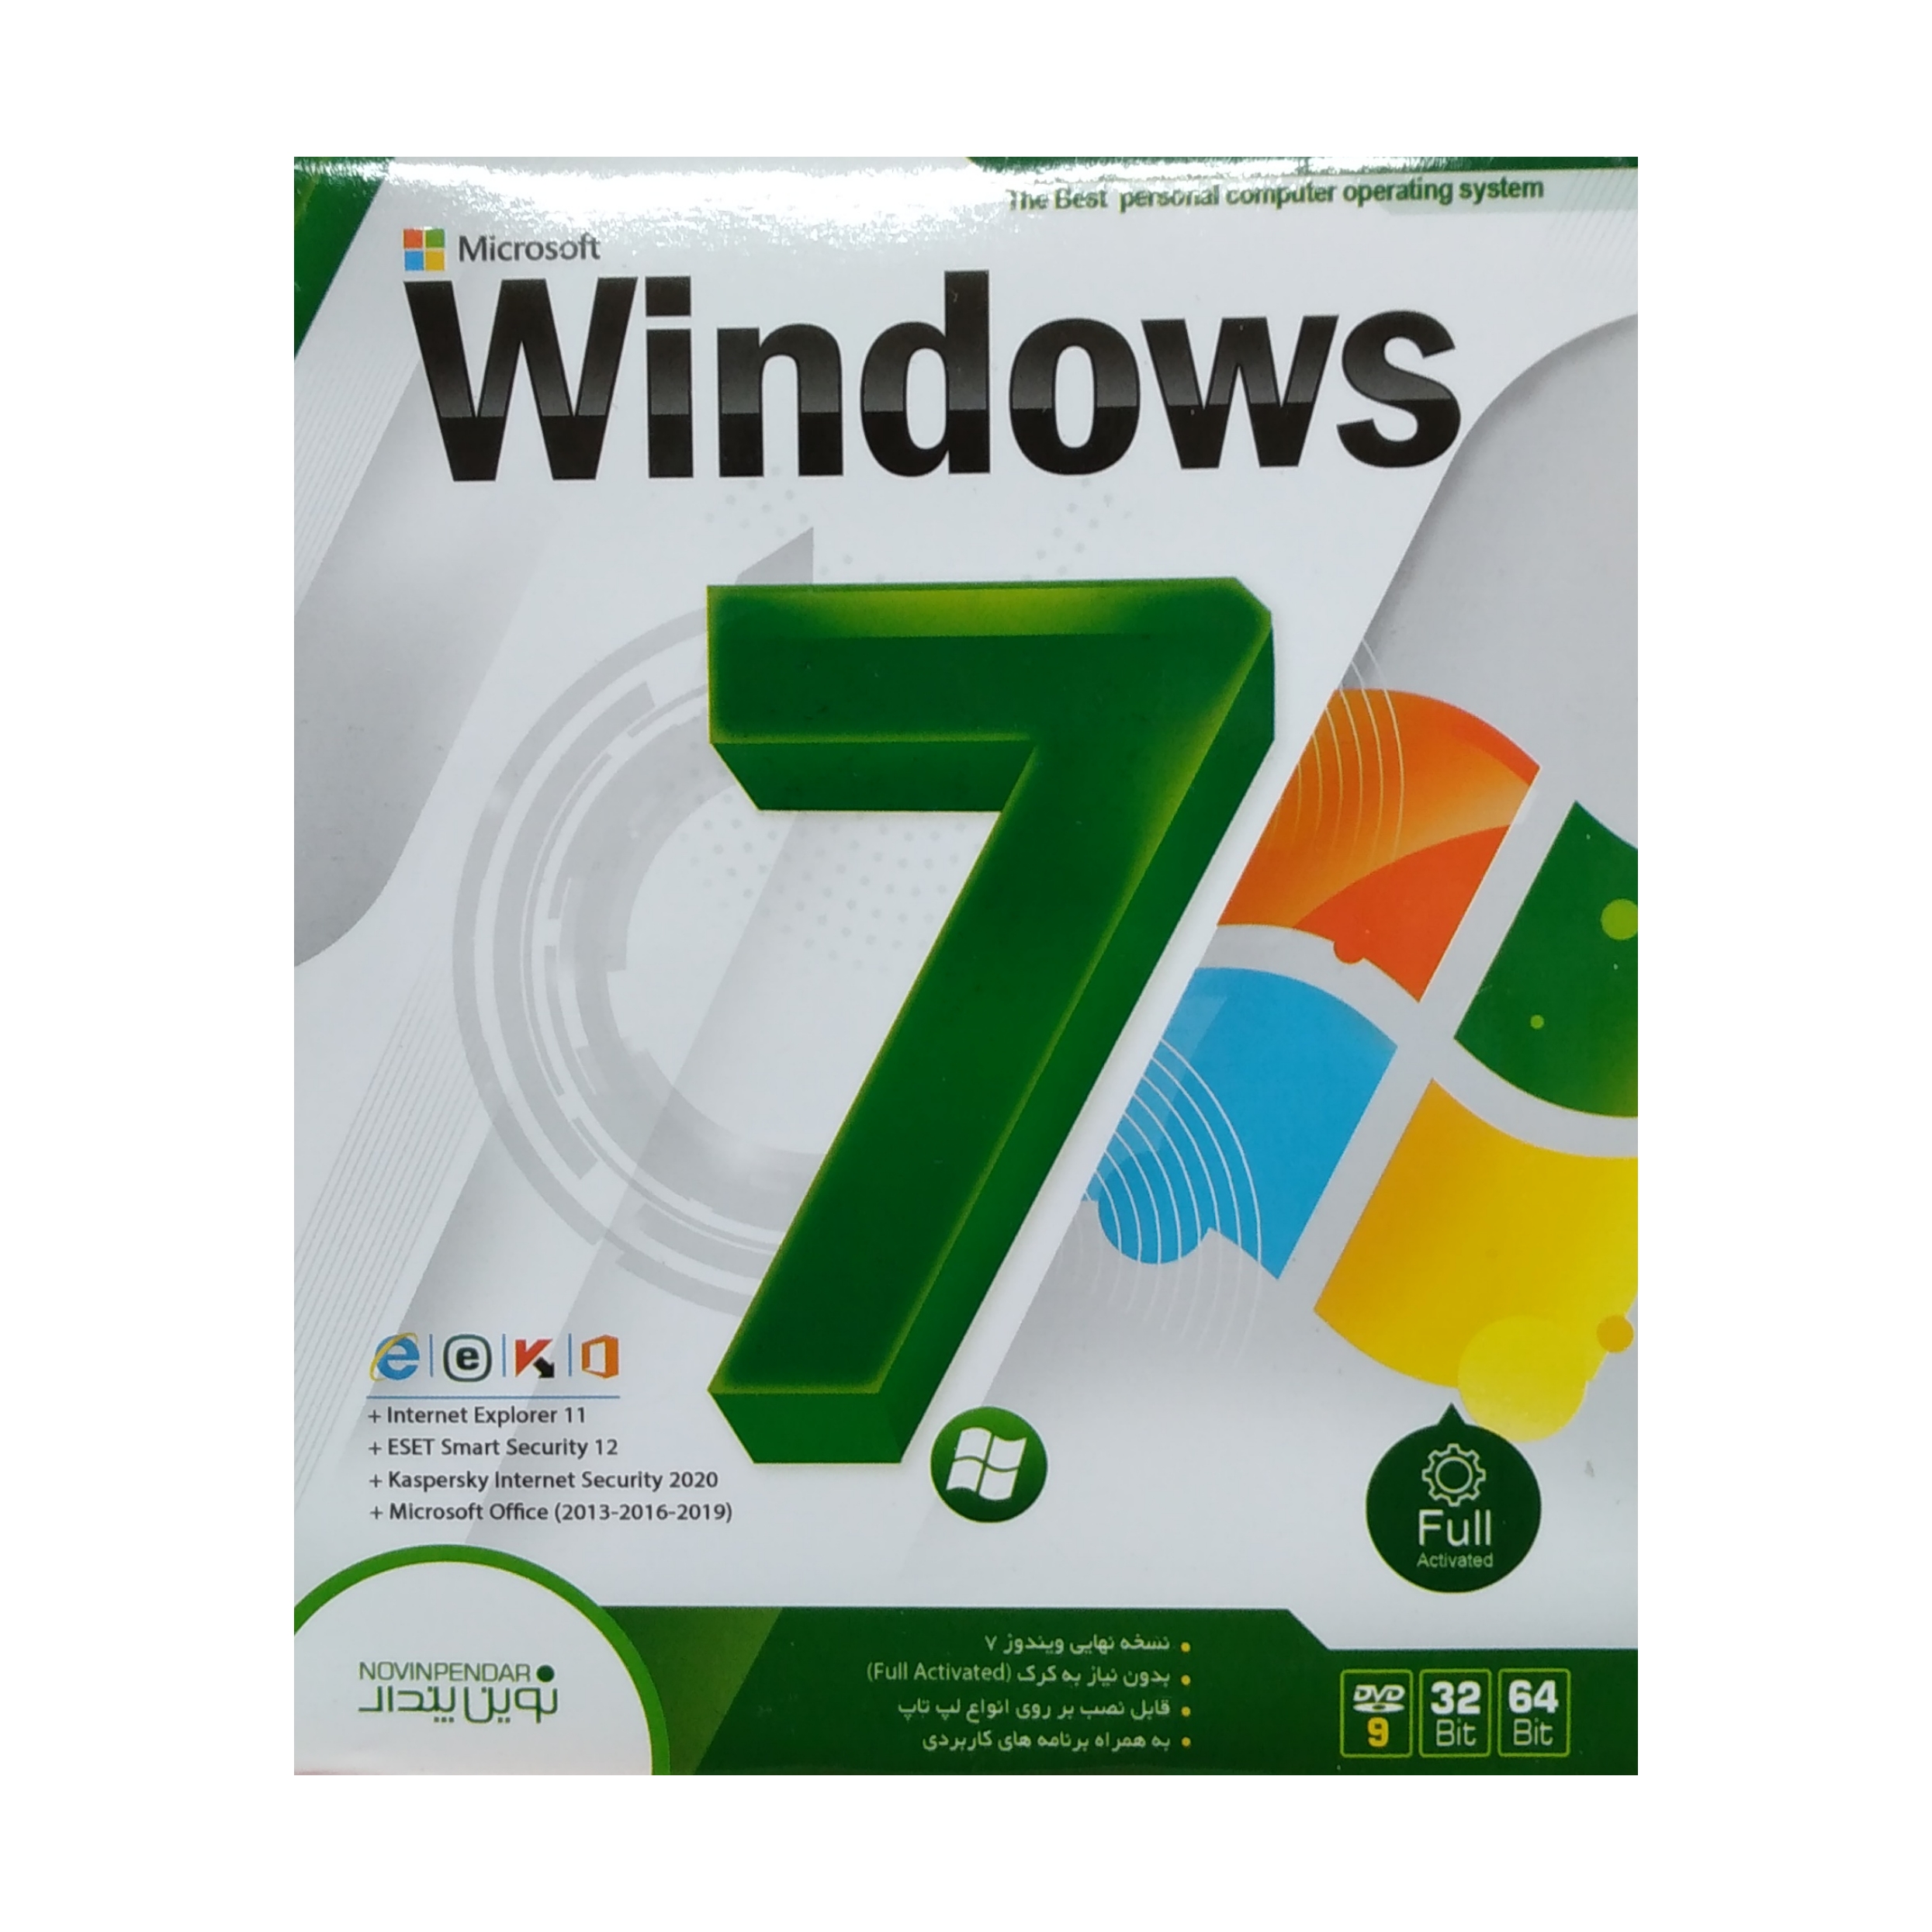 سیستم عامل Windows 7 نشر نوین پندار